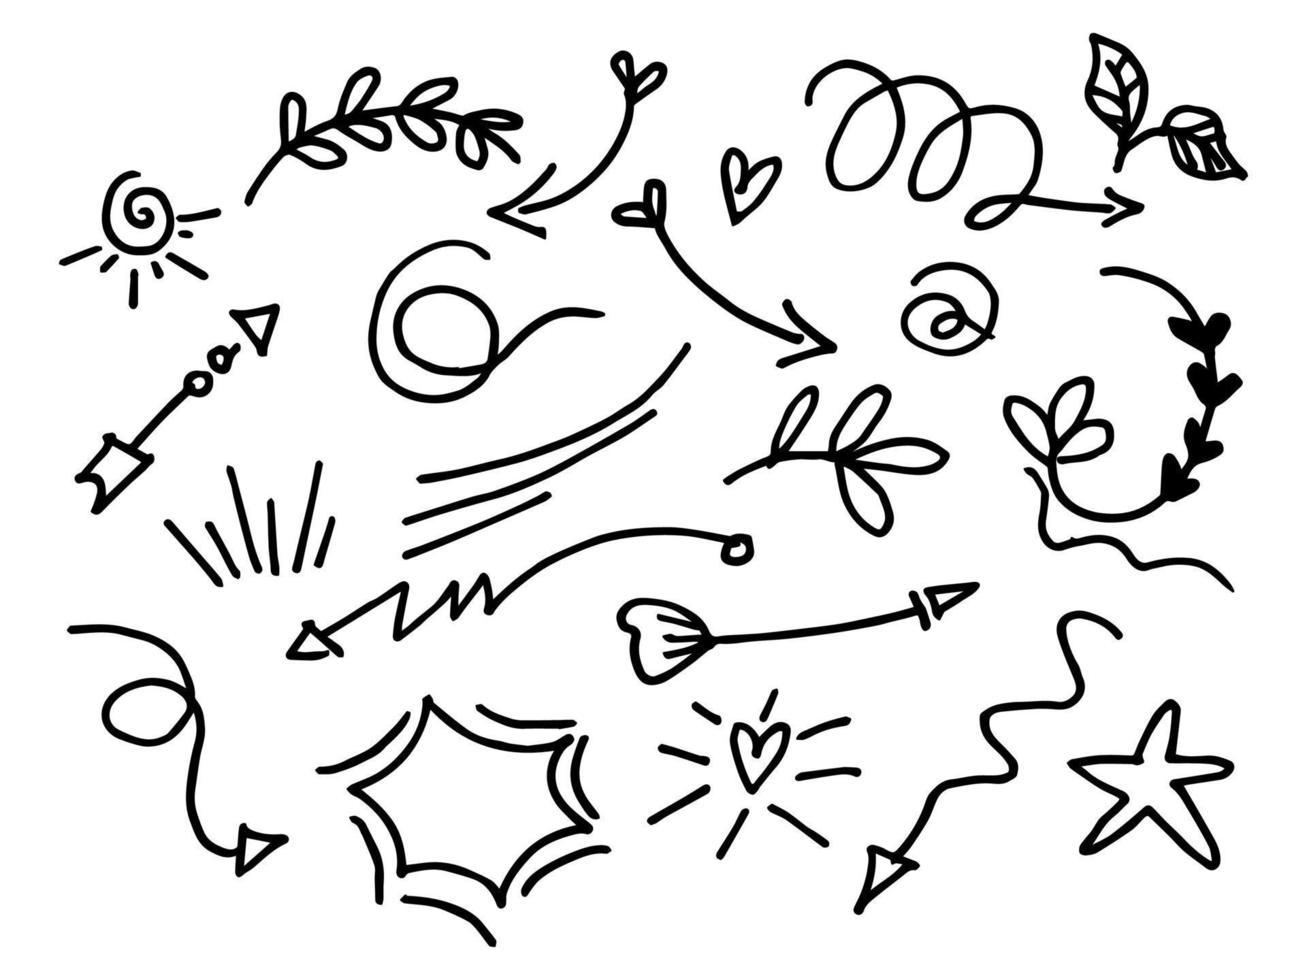 ensemble d'éléments de conception de doodle. griffonnages d'accentuation, swishes bouclés, swoops, tourbillon, coeur, amour, couronne, fleur, feuille, étoile, feu d'artifice, flèche, tex en surbrillance. pour la conception conceptuelle vecteur